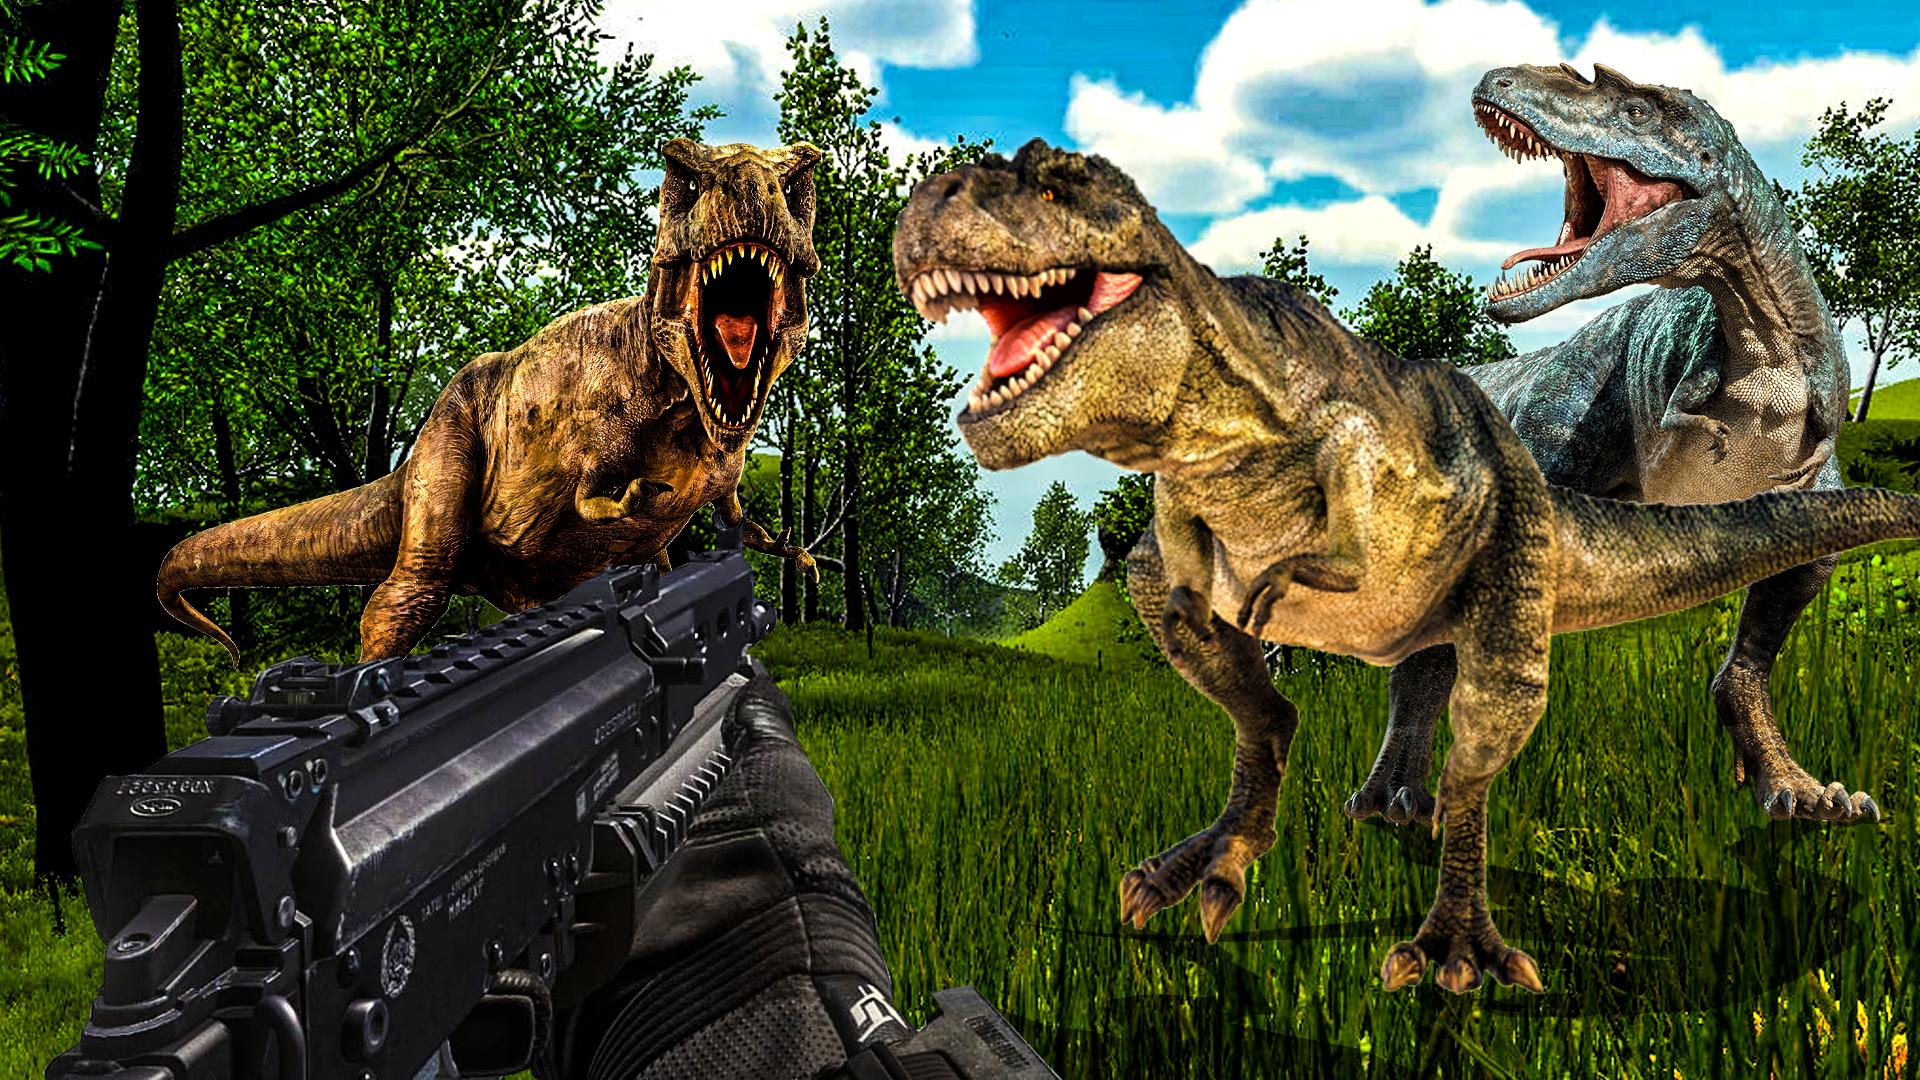 Carnivores Dino hunter game-Dinosaur game shooting 9.1 Screenshot 6